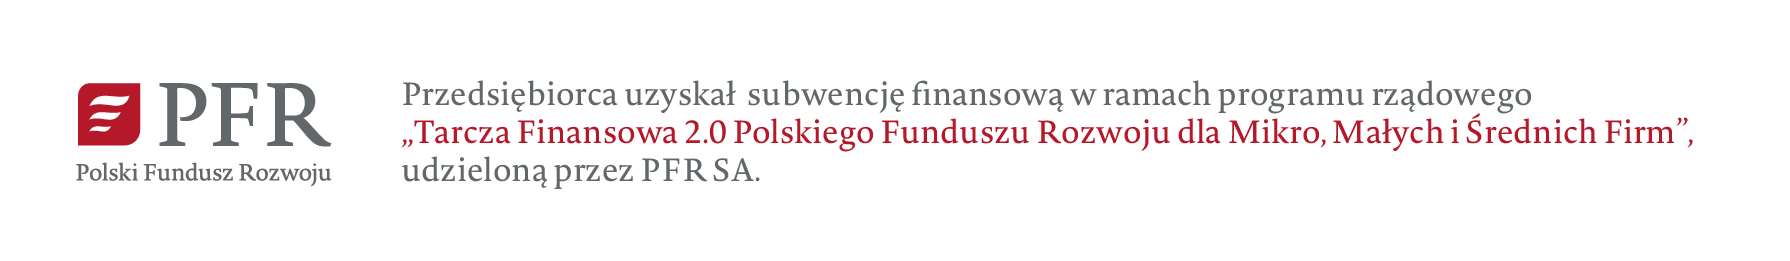 Przedsiębiorca uzyskał subwencję finansową w ramach programu rządowego "Tarcza Finansowa 2.0 Polskiego Funduszu Rozwoju dla Mikro, Małych i Średnich Firm" udzieloną przez PFR SA.